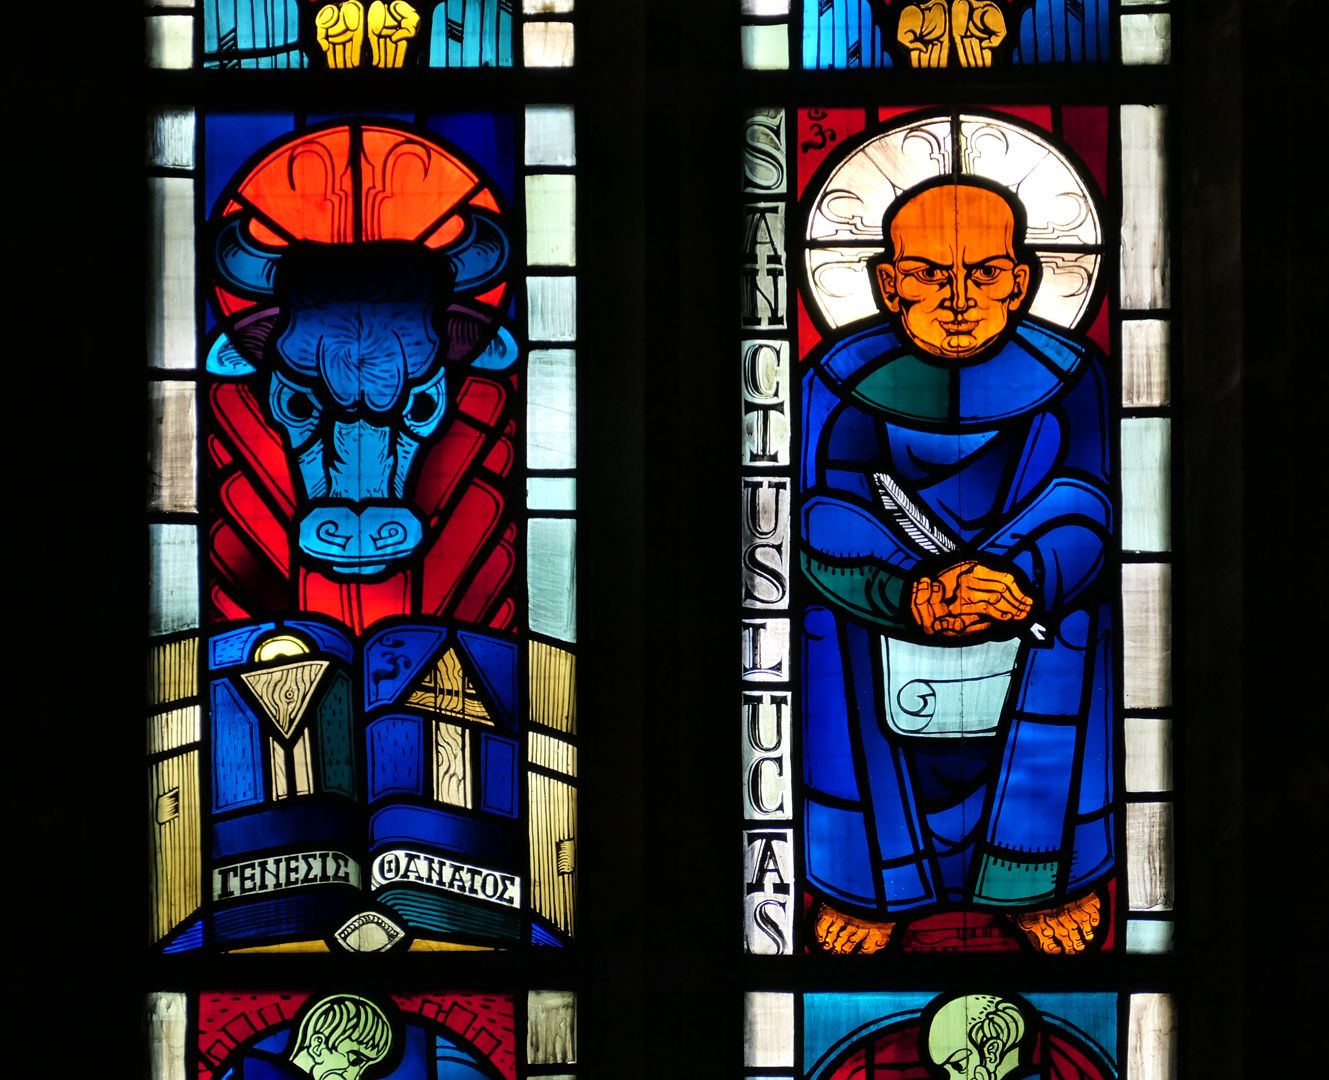 Evangelistenfenster / Lucas Der Stier und der Evangelist Lucas (links über dem Kopf und an anderer Stelle das "Om" Zeichen des Künstlers)